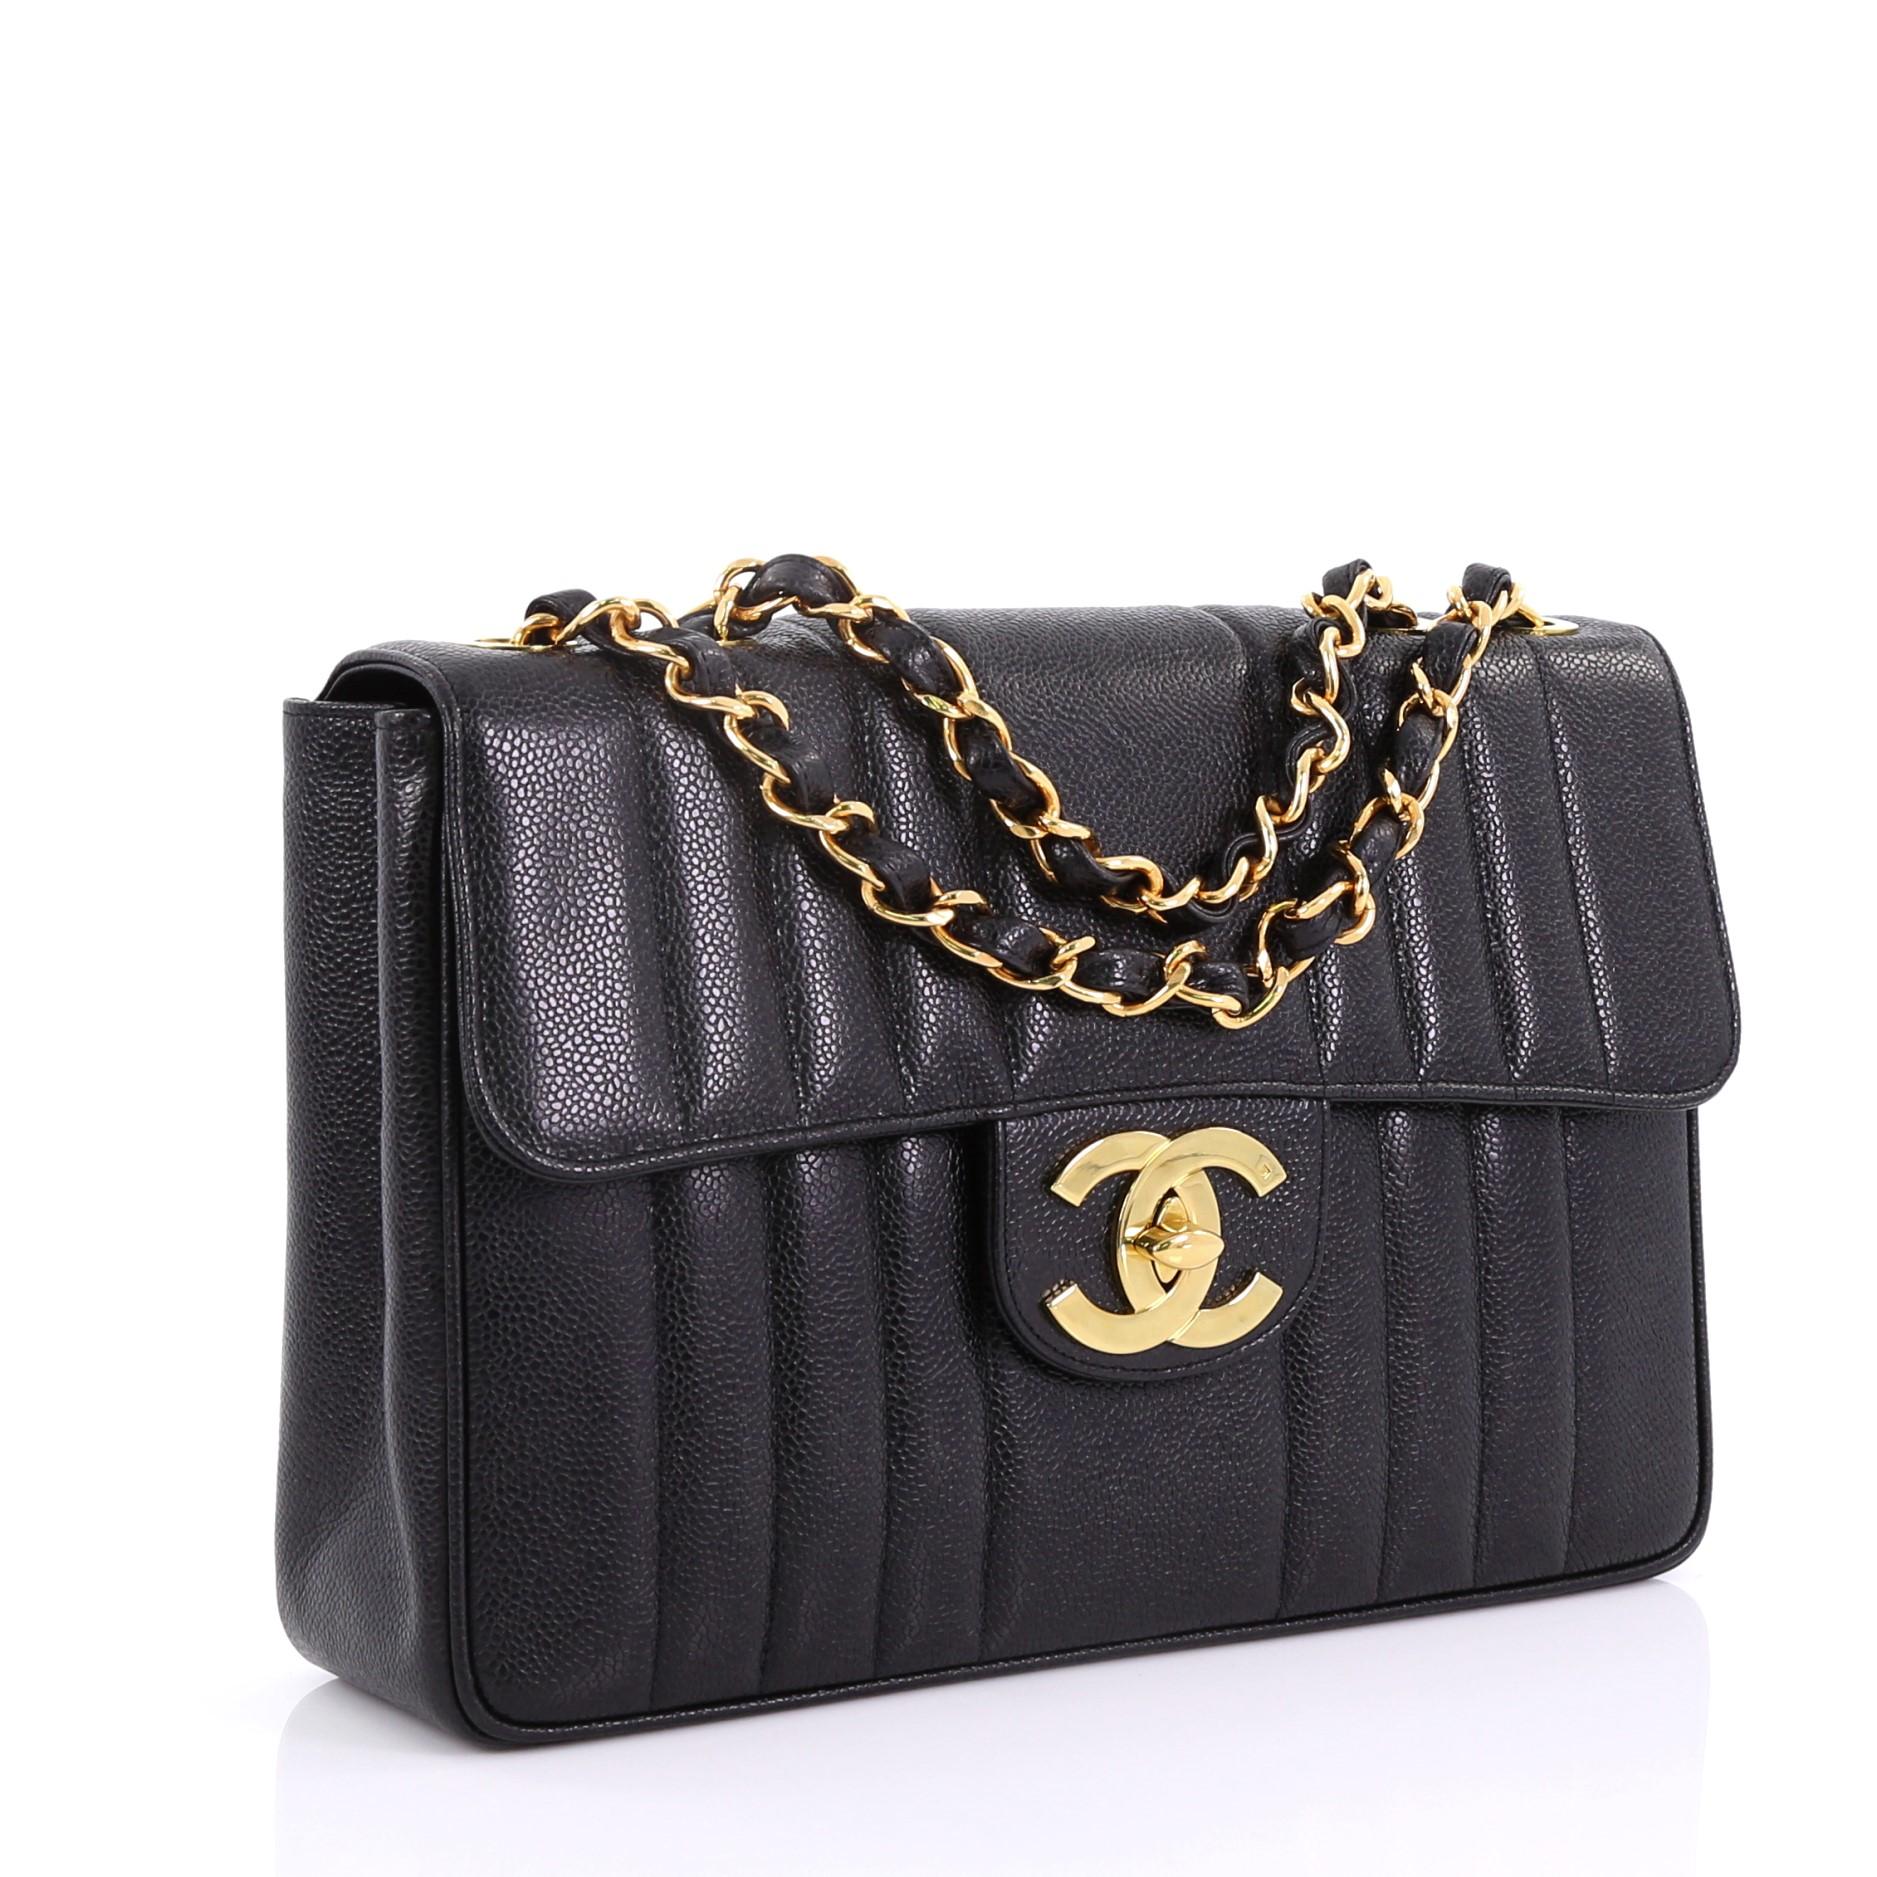 Black Chanel Vintage CC Chain Flap Bag Vertical Quilt Caviar Maxi